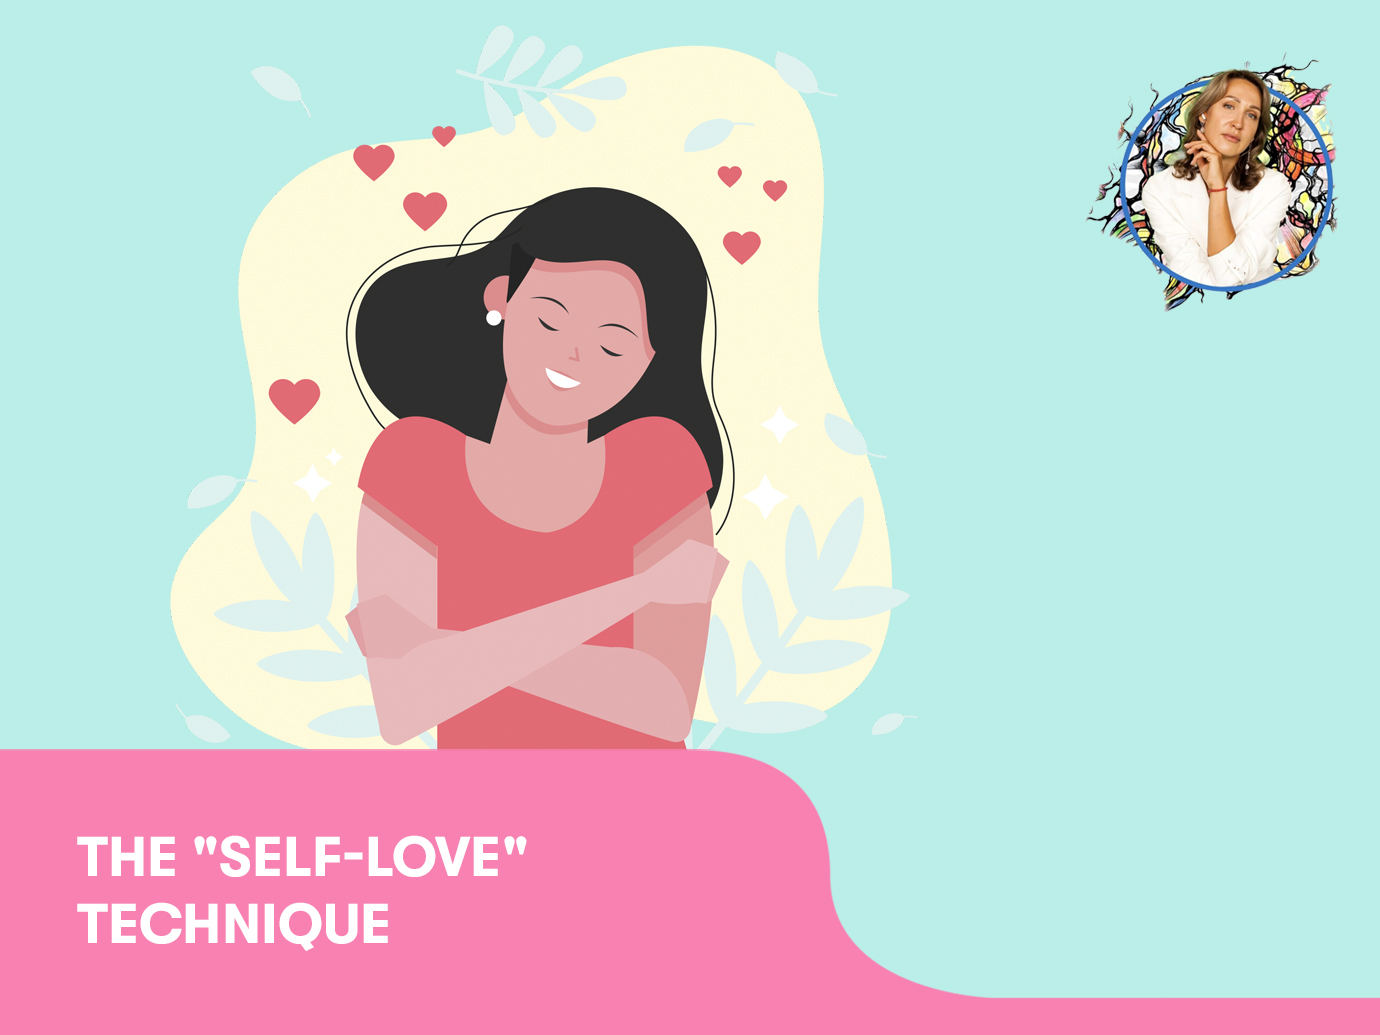 The “Self-love“ technique